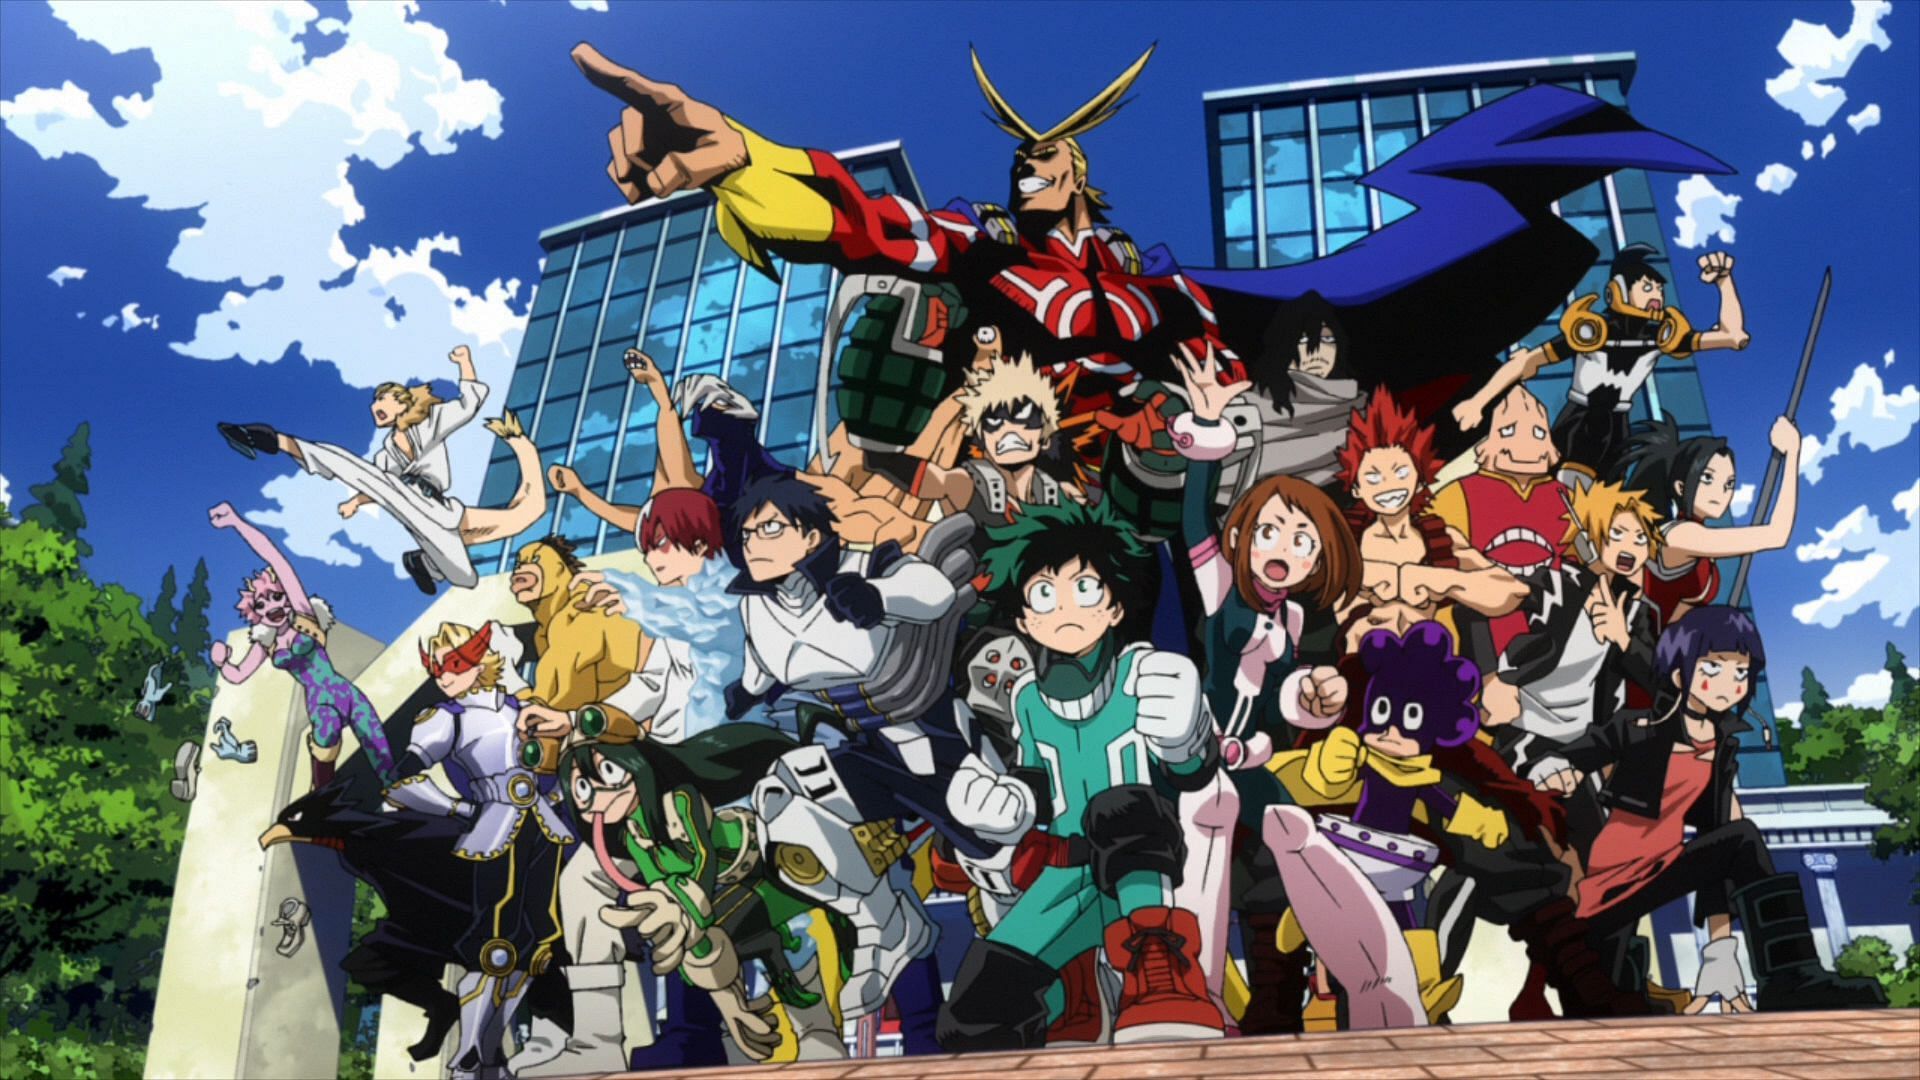 My Hero Academia Announces 4th Theatrical Anime Film - Crunchyroll